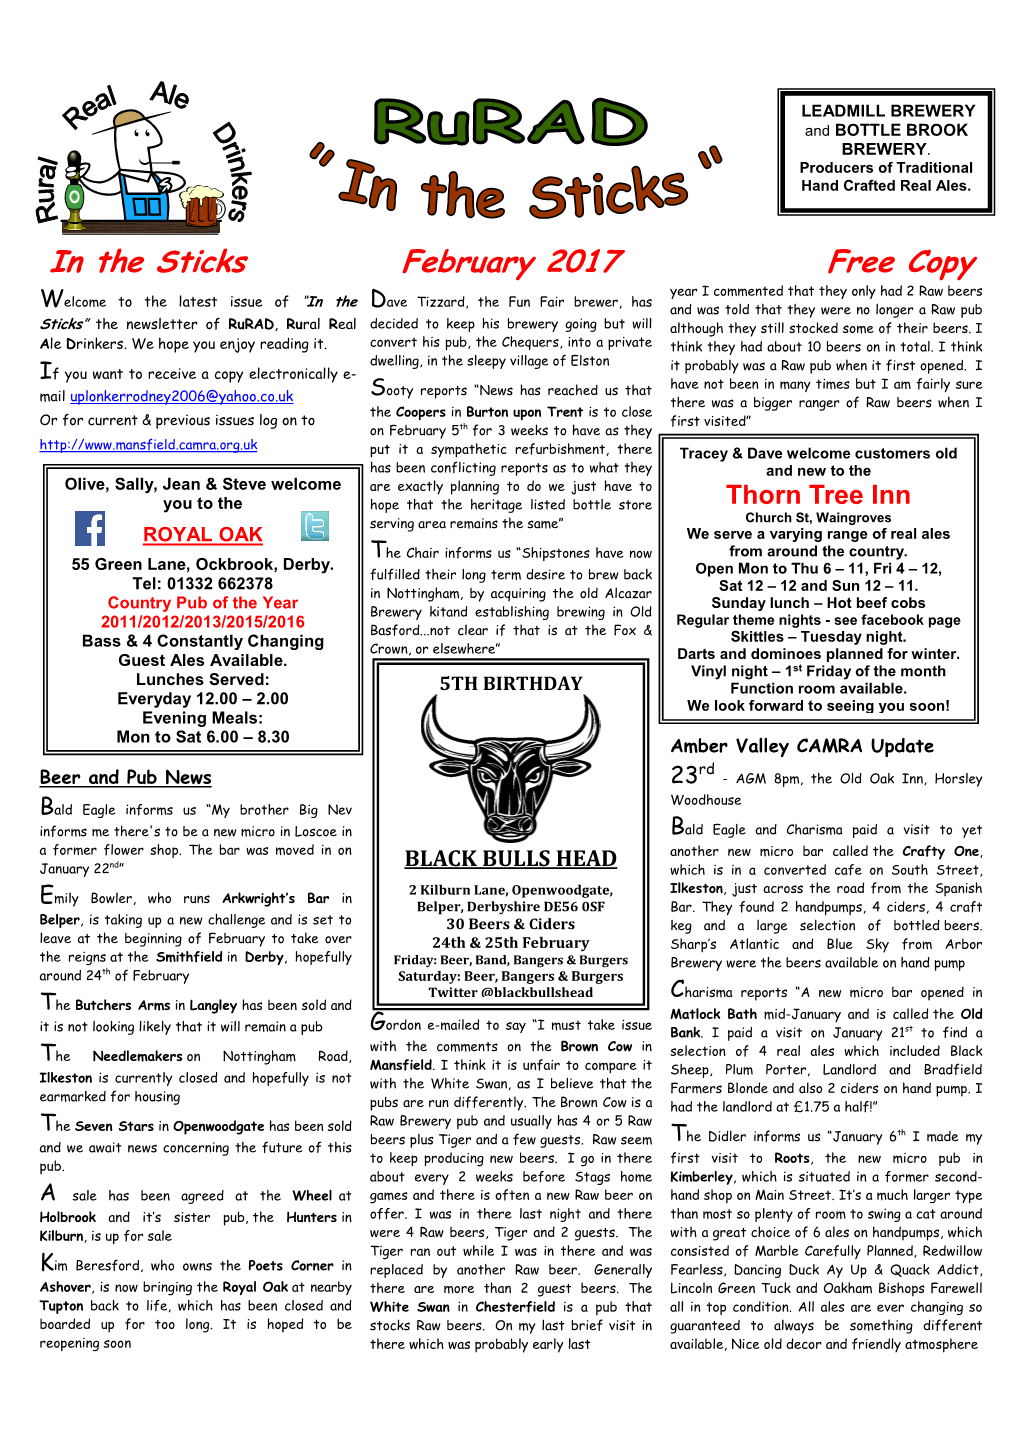 February 2017 Newsletter